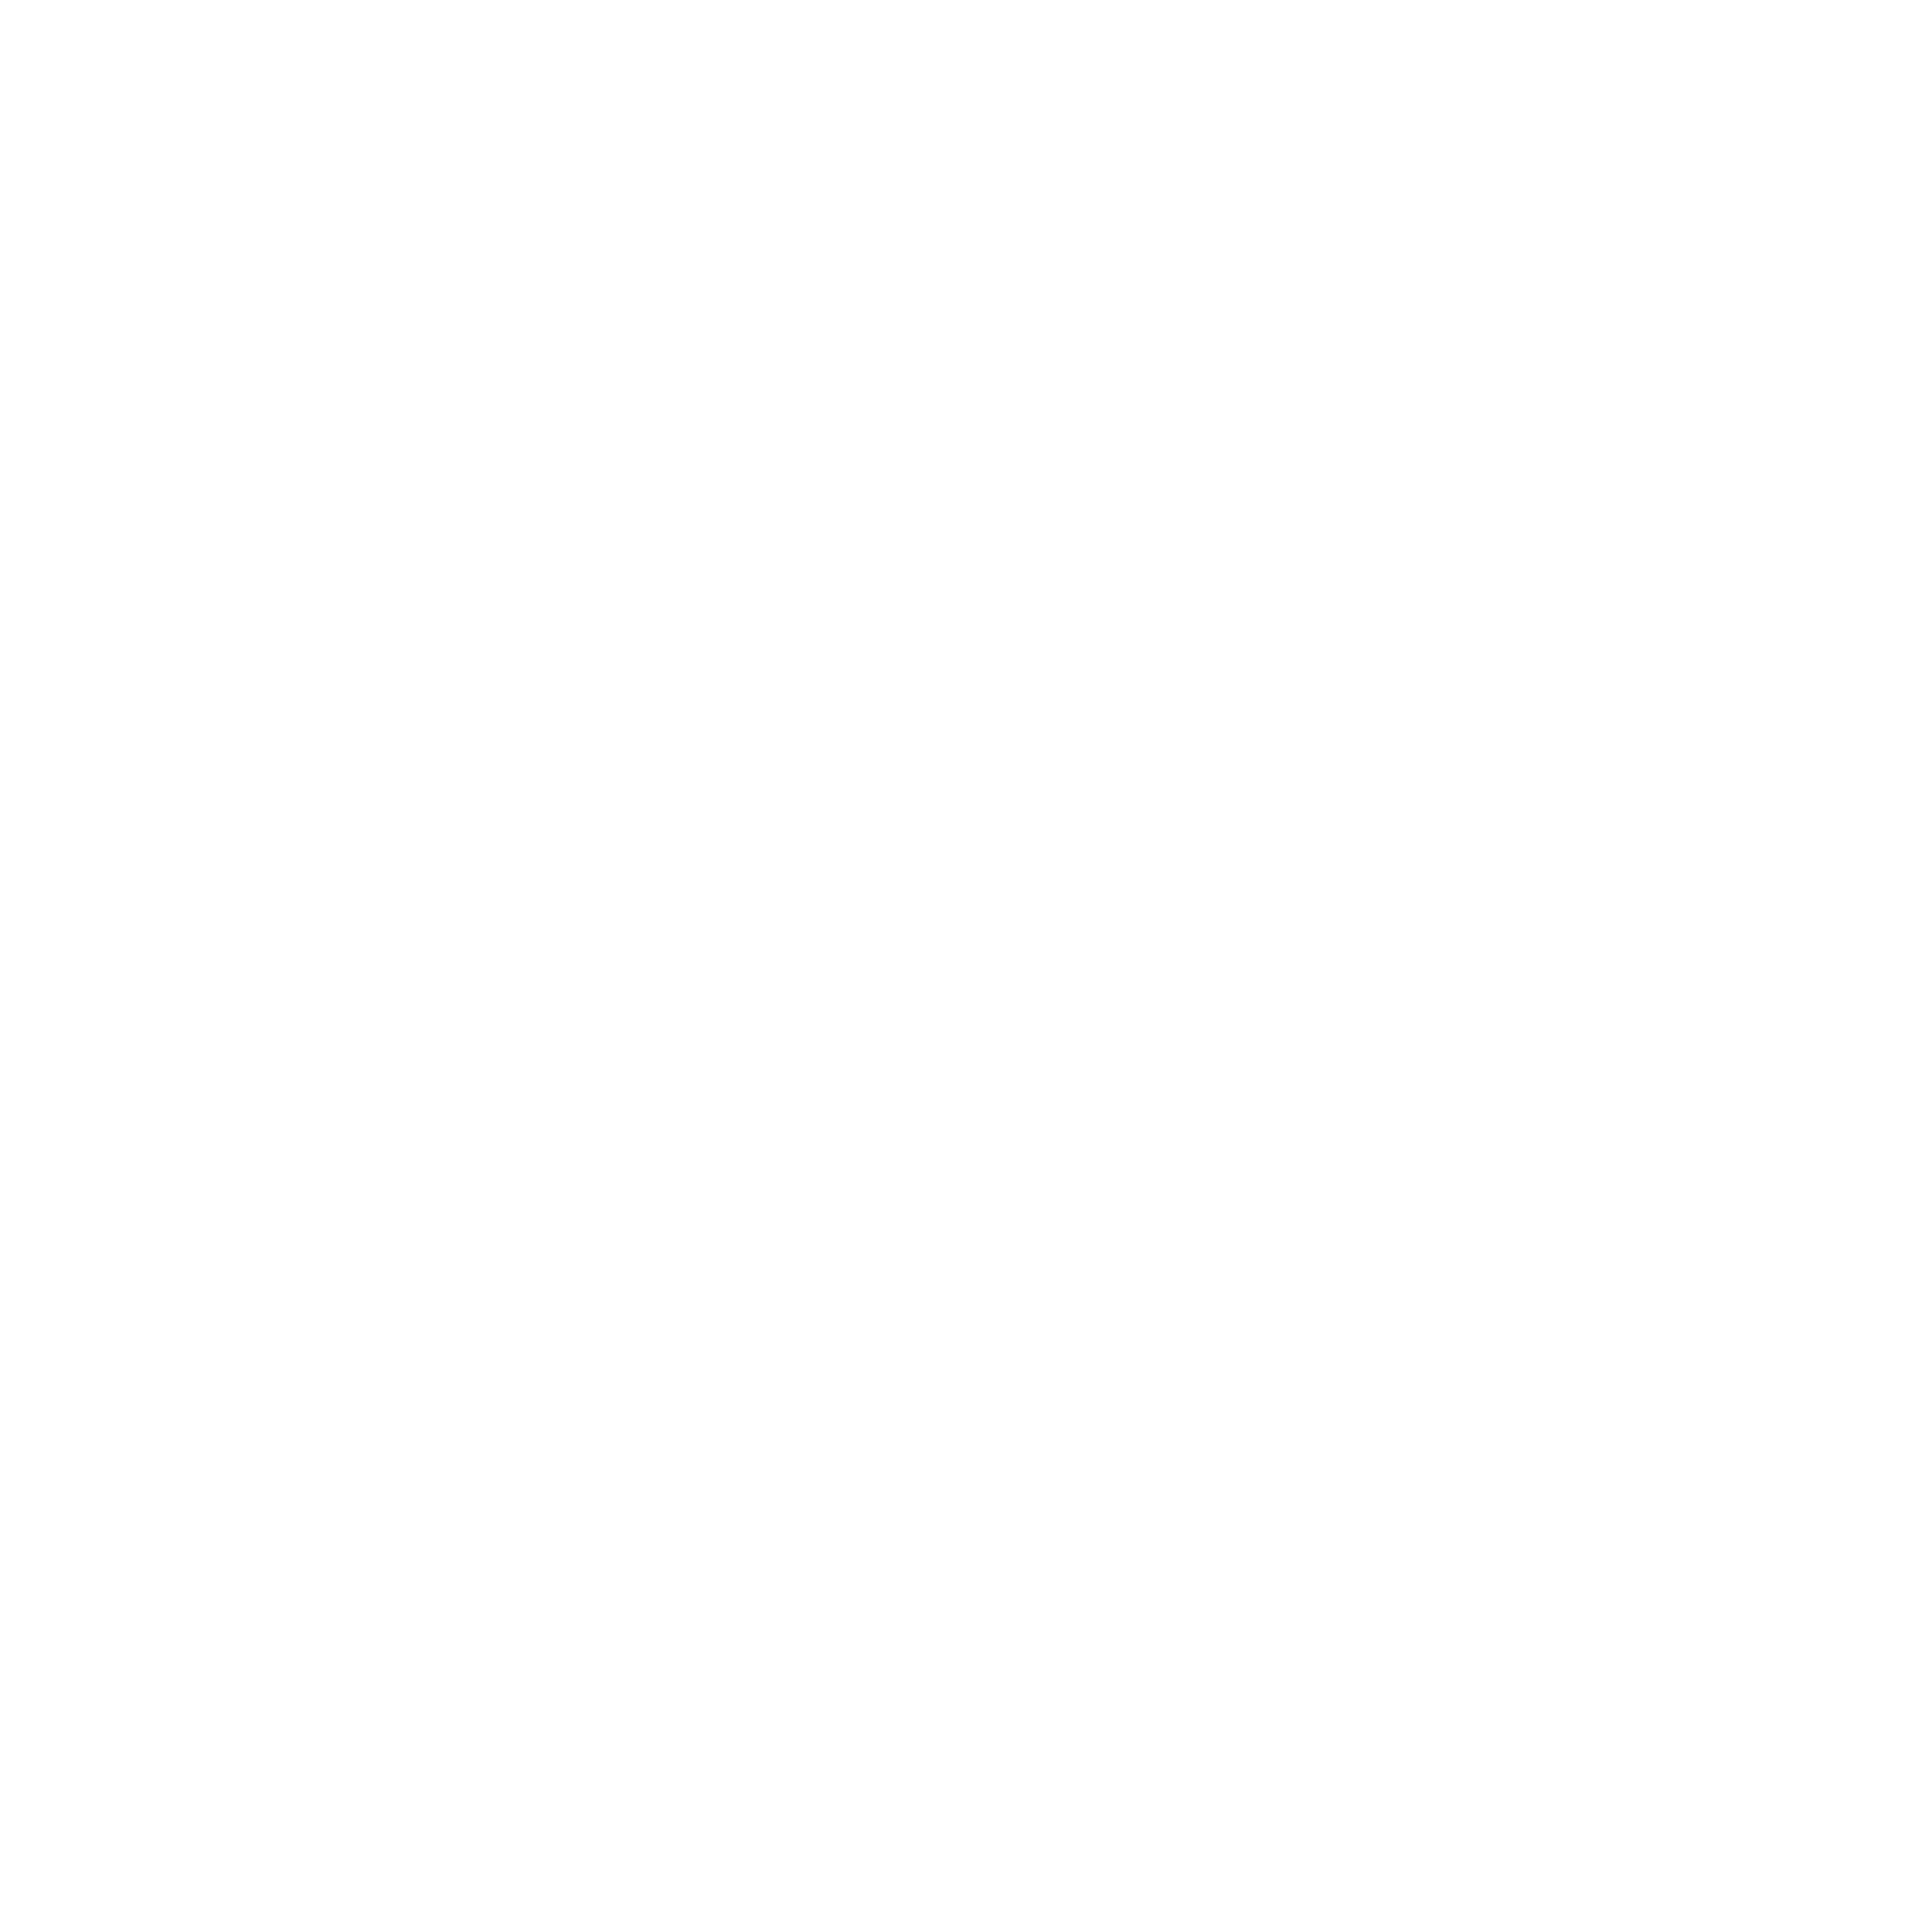 Ryan Talbot